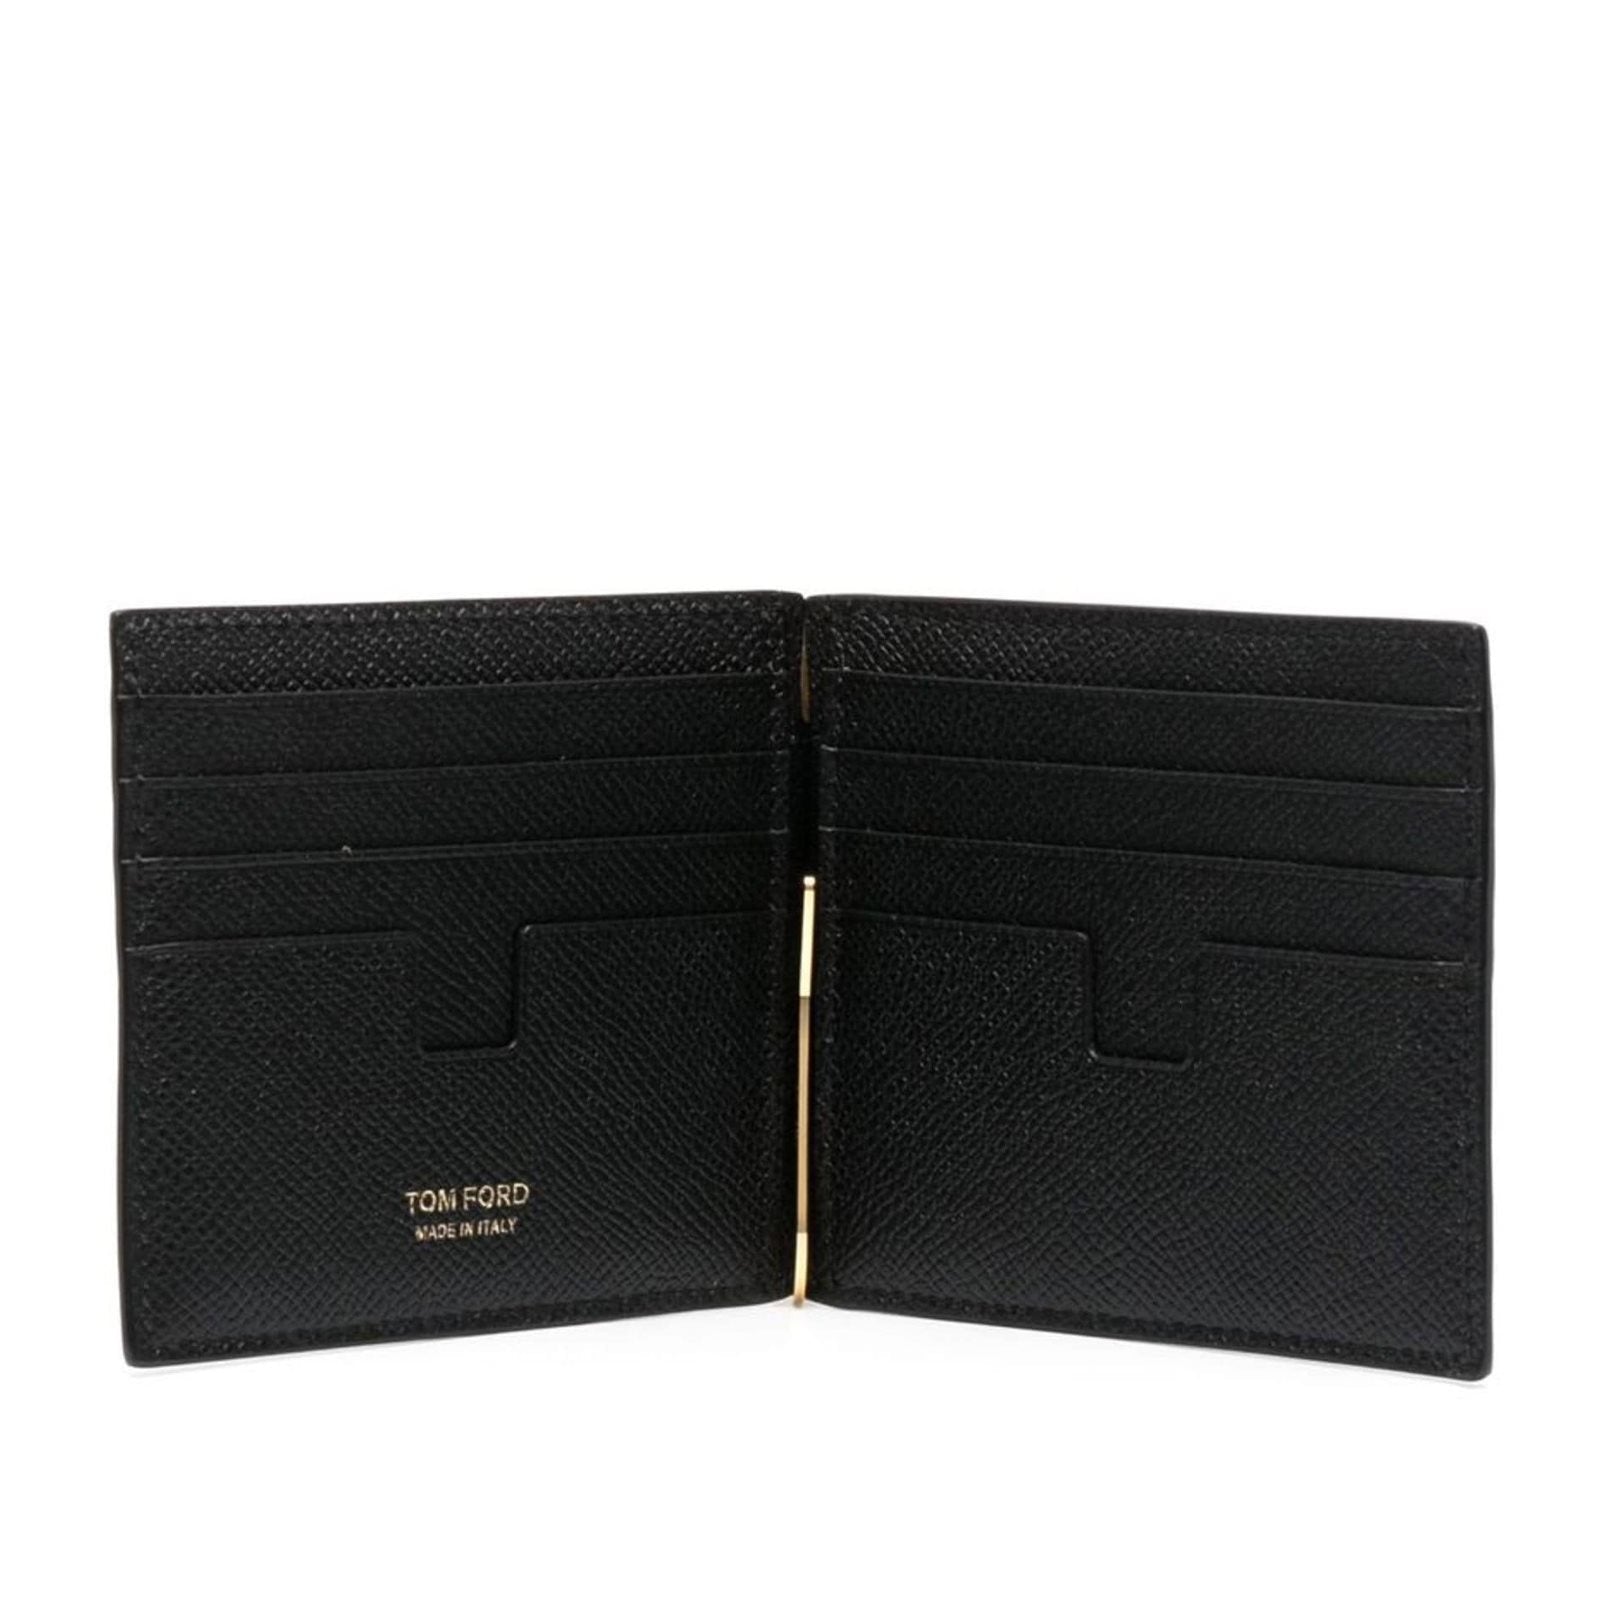 Grain leather bifold wallet